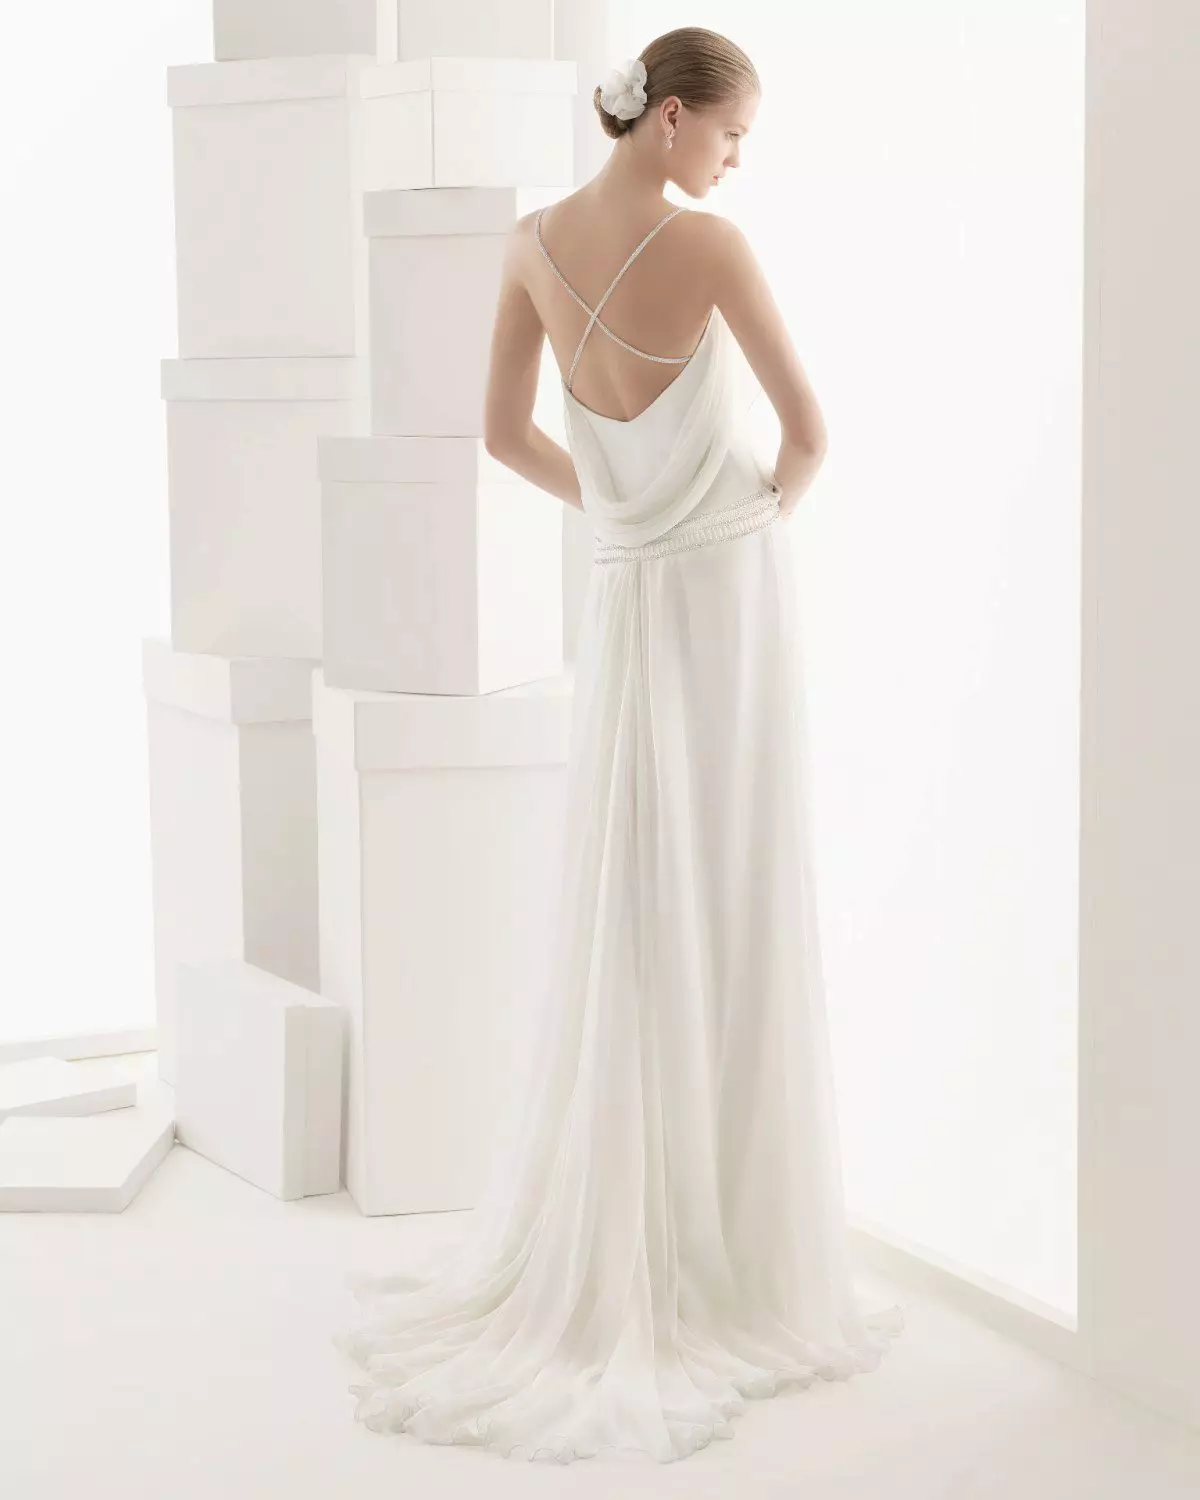 Hvid kjole med åben tilbage på stropperne